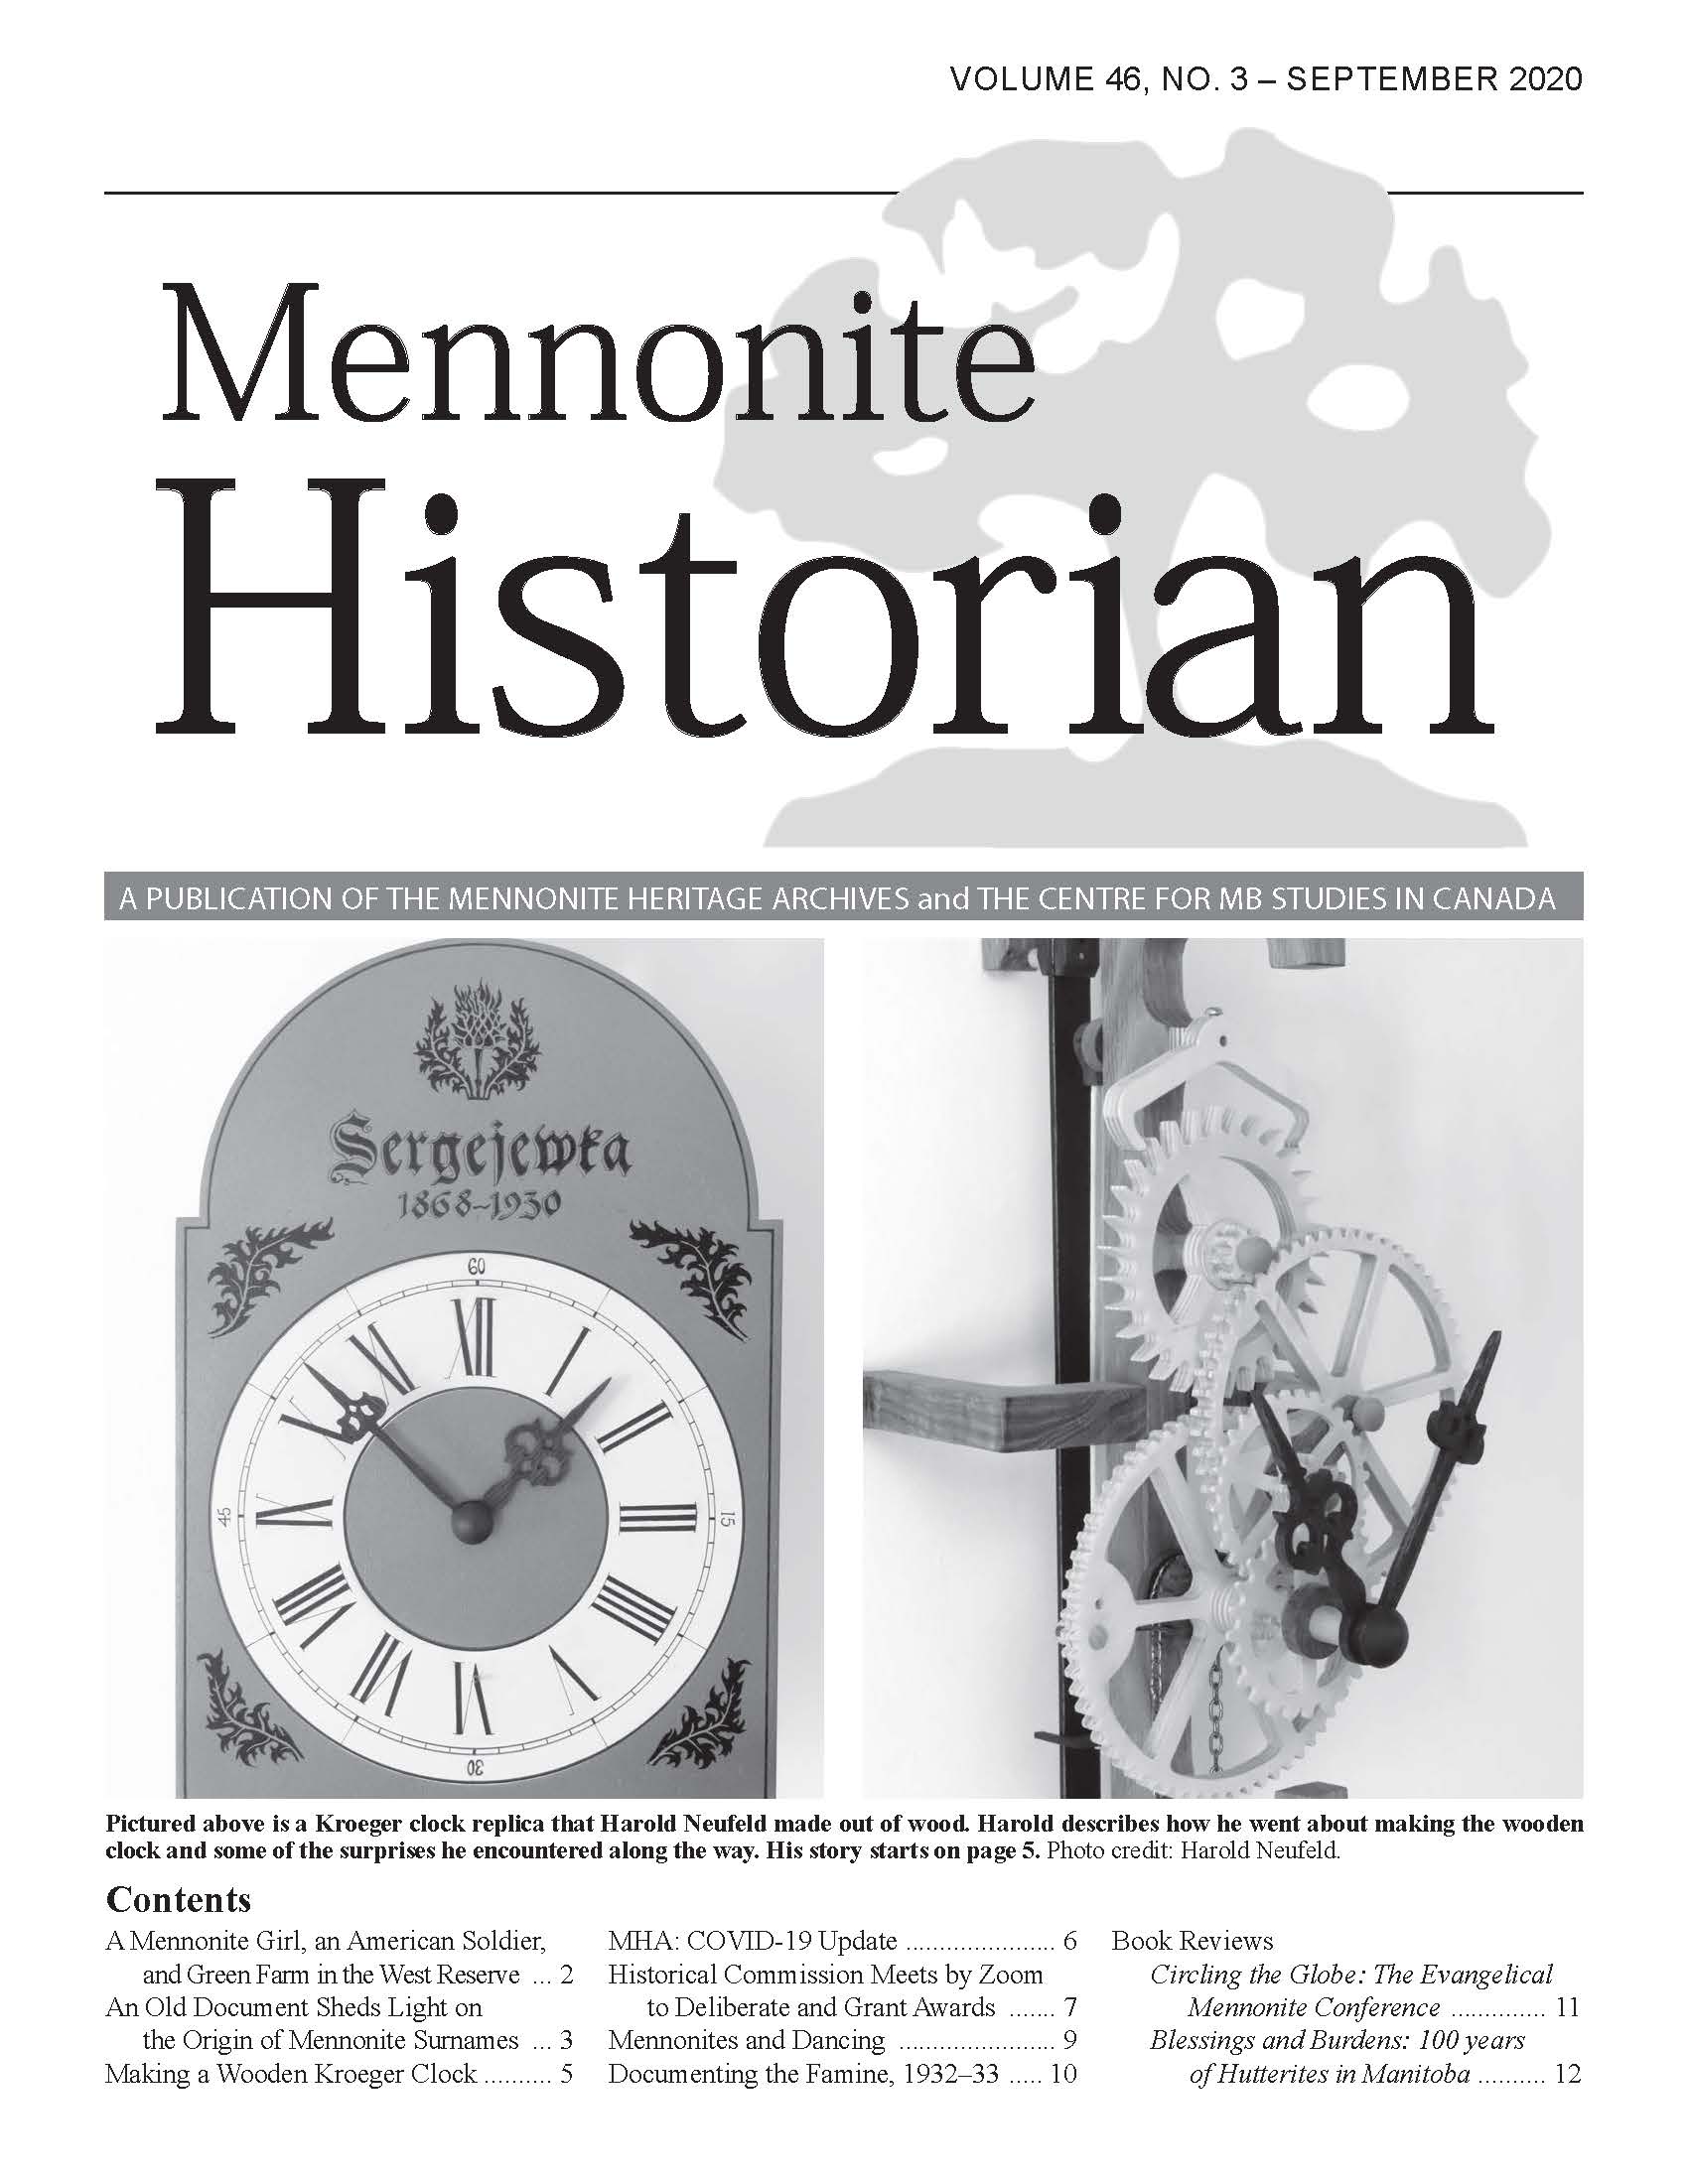 Mennonite Historian (September 2020)